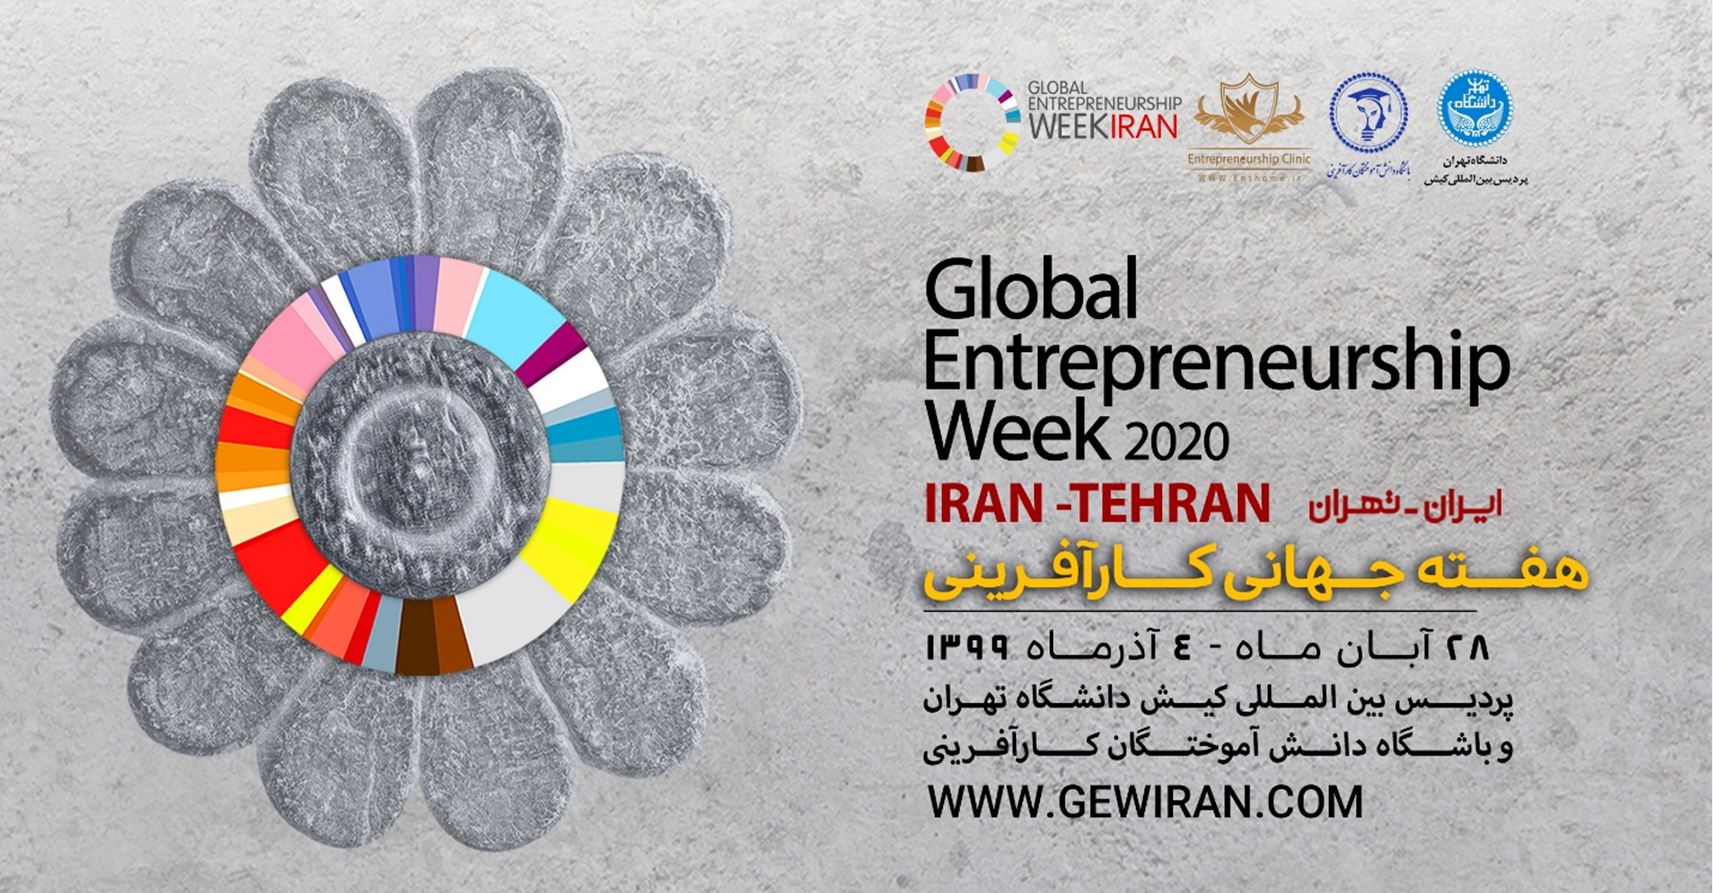 ایران میزبان هفتمین دوره هفته جهانی کارآفرینی با شعار “یادگیری در زمان کرونا”